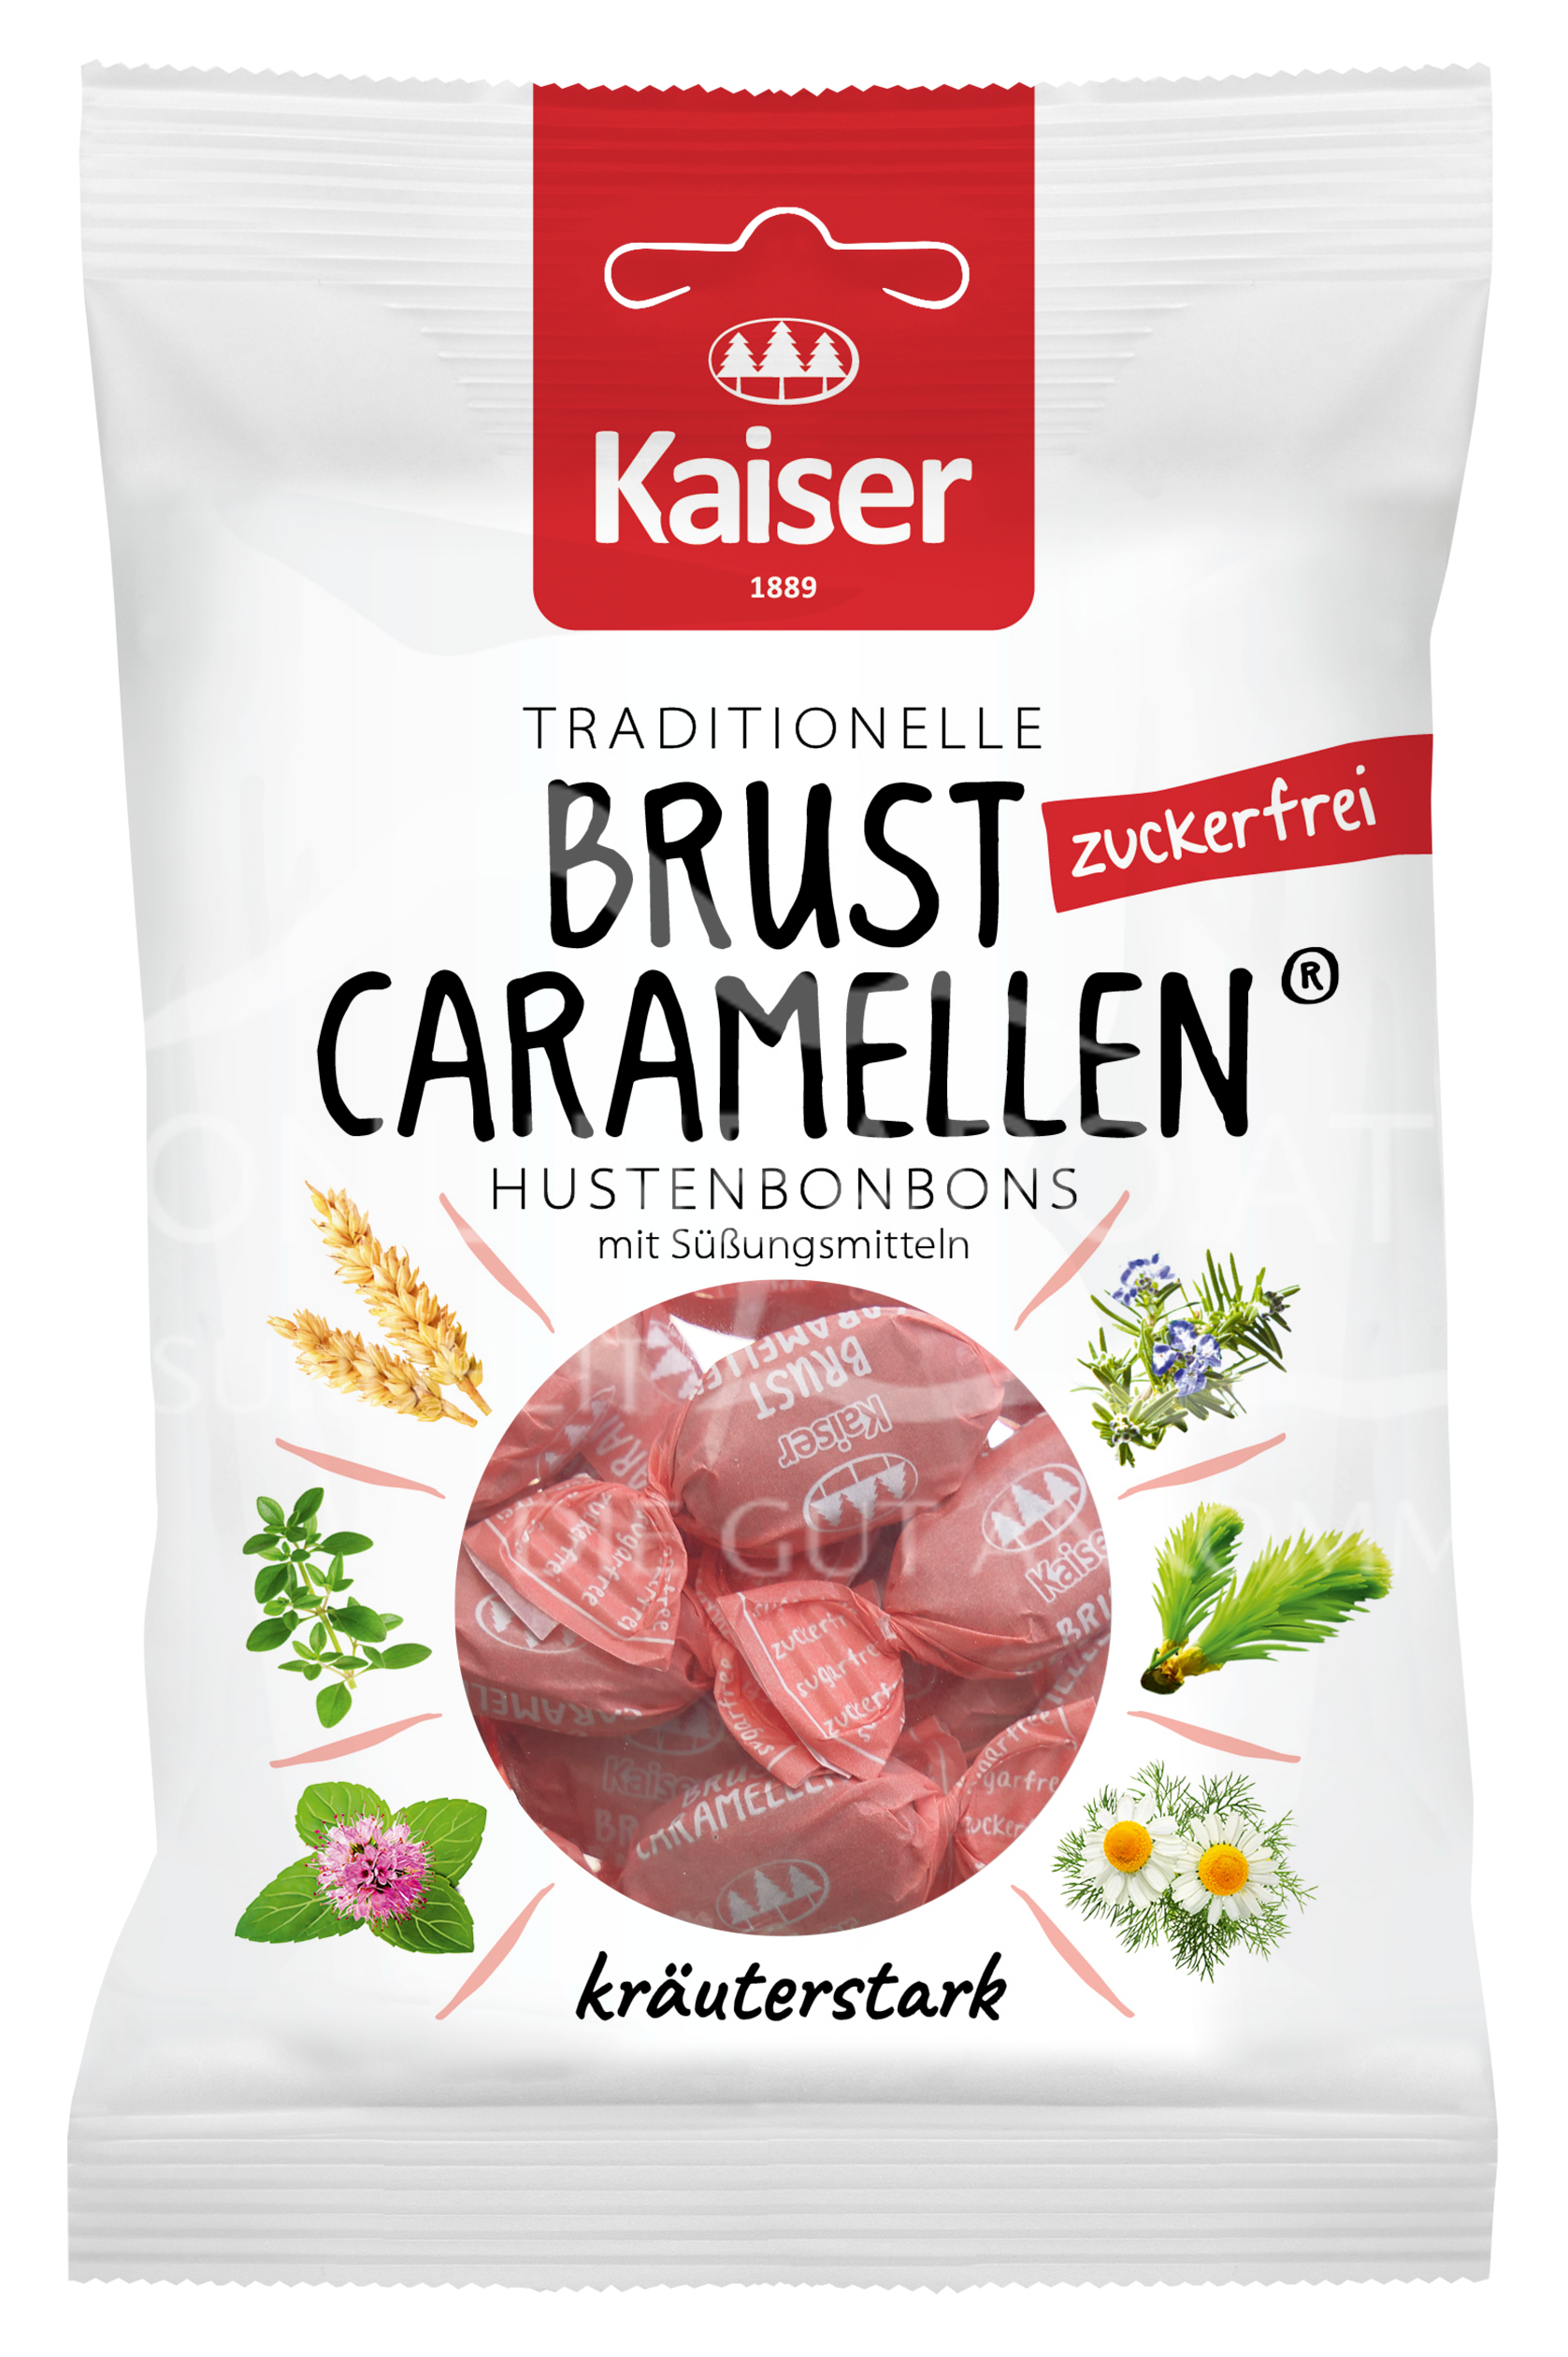 Kaiser Brust Caramellen Hustenbonbons zuckerfrei